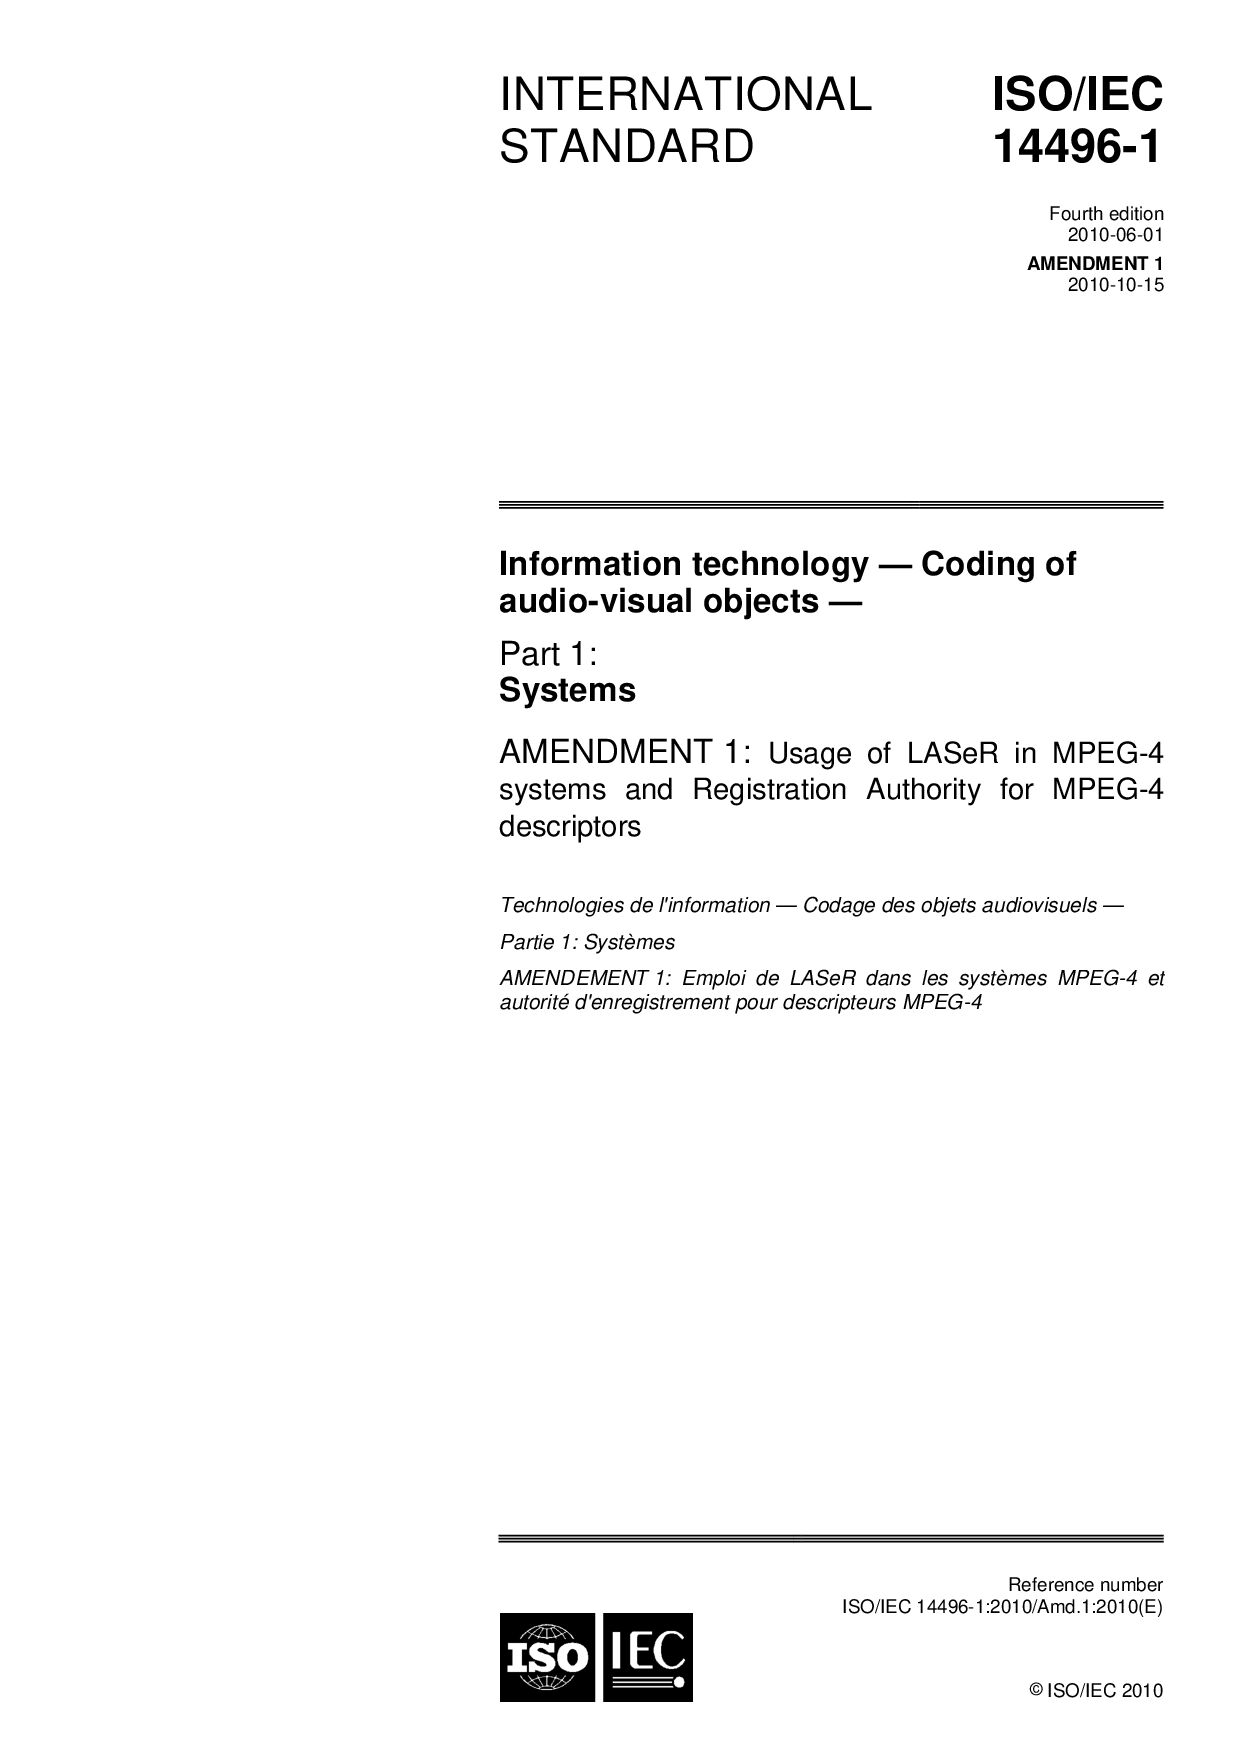 ISO/IEC 14496-1:2010/Amd 1:2010